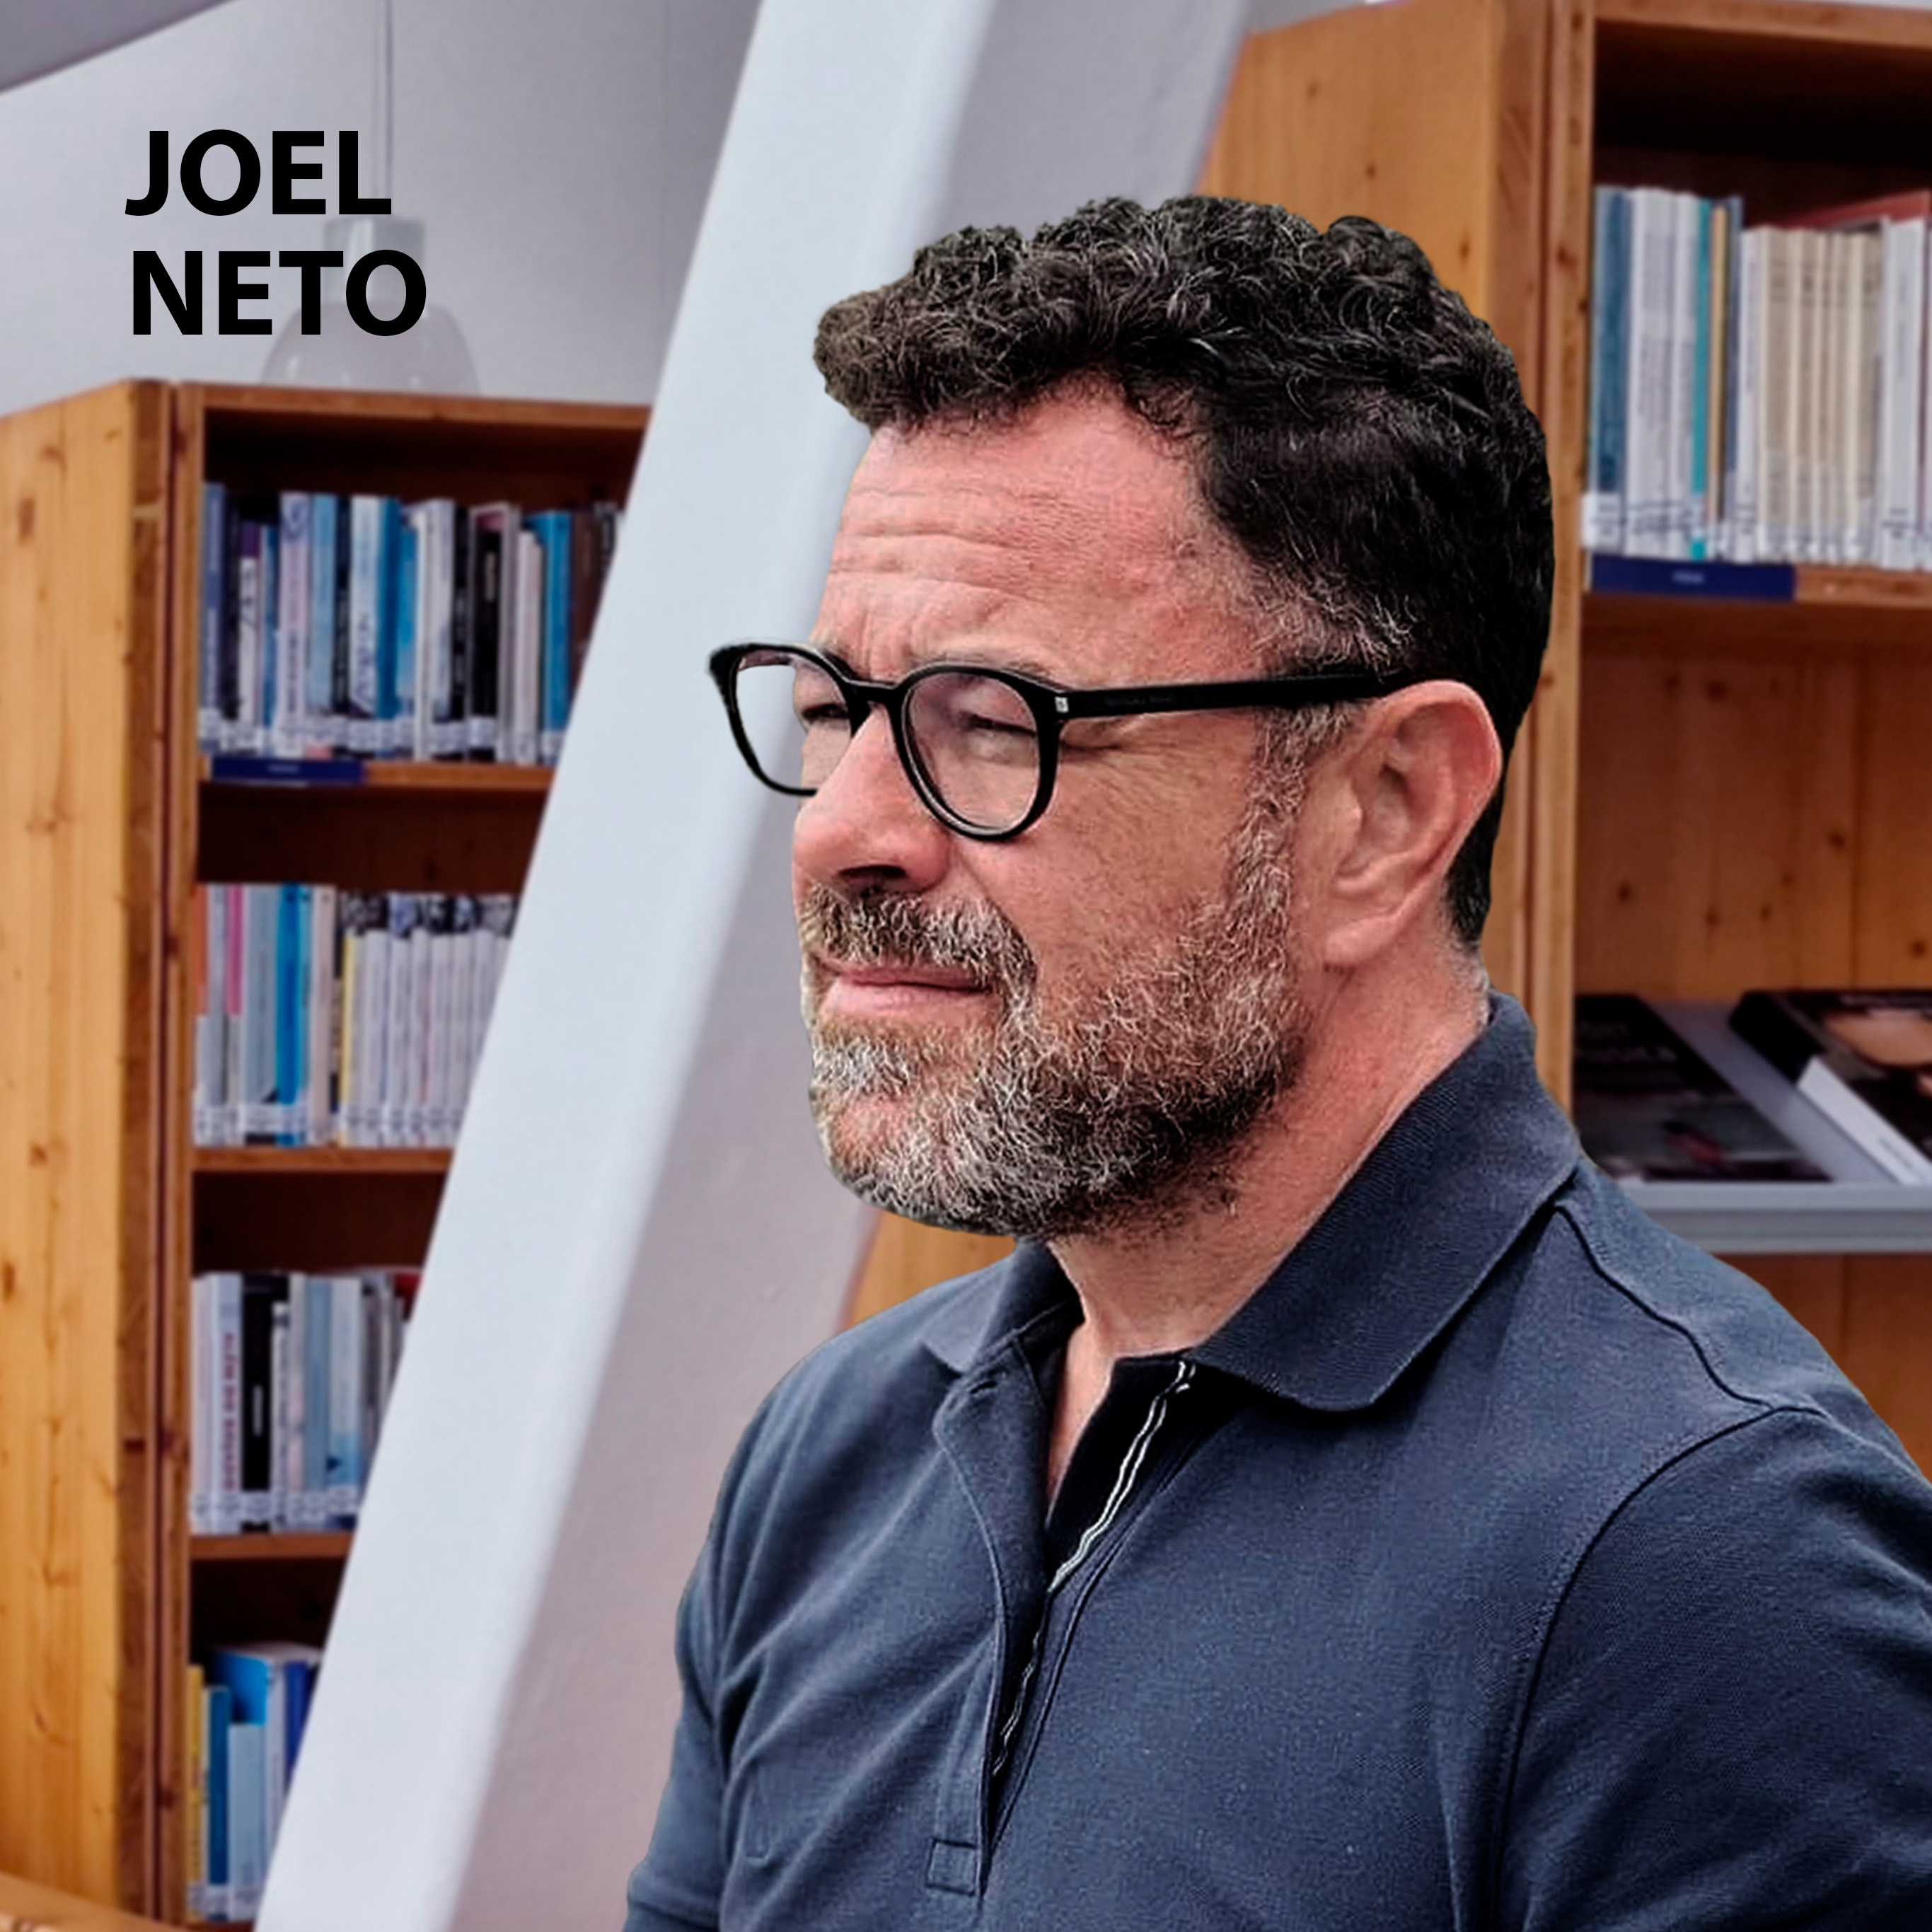 Livro de Cabeceira EP.30 – Joel Neto apresenta a obra “Como quem vai ao horizonte” do autor Marcolino Candeias.